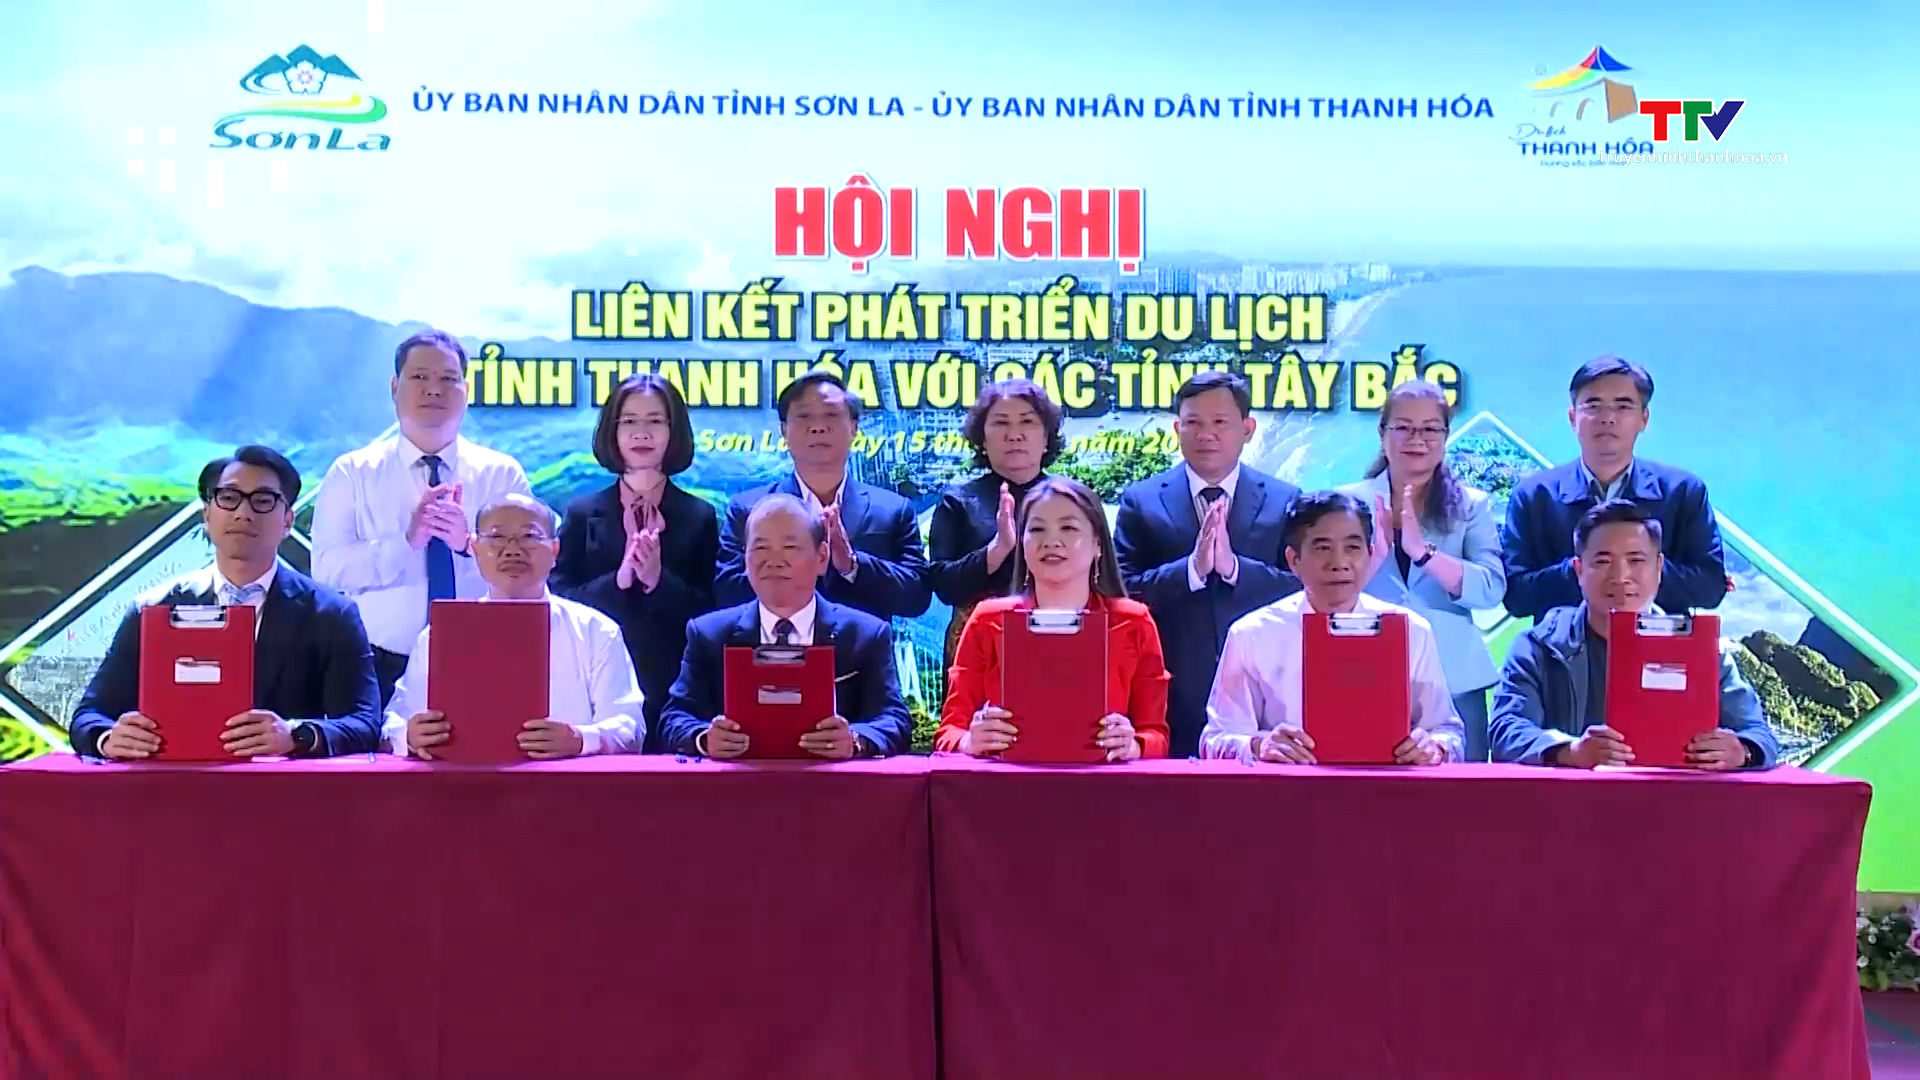 Hội nghị liên kết phát triển du lịch tỉnh Thanh Hoá với các tỉnh Tây Bắc- Ảnh 3.